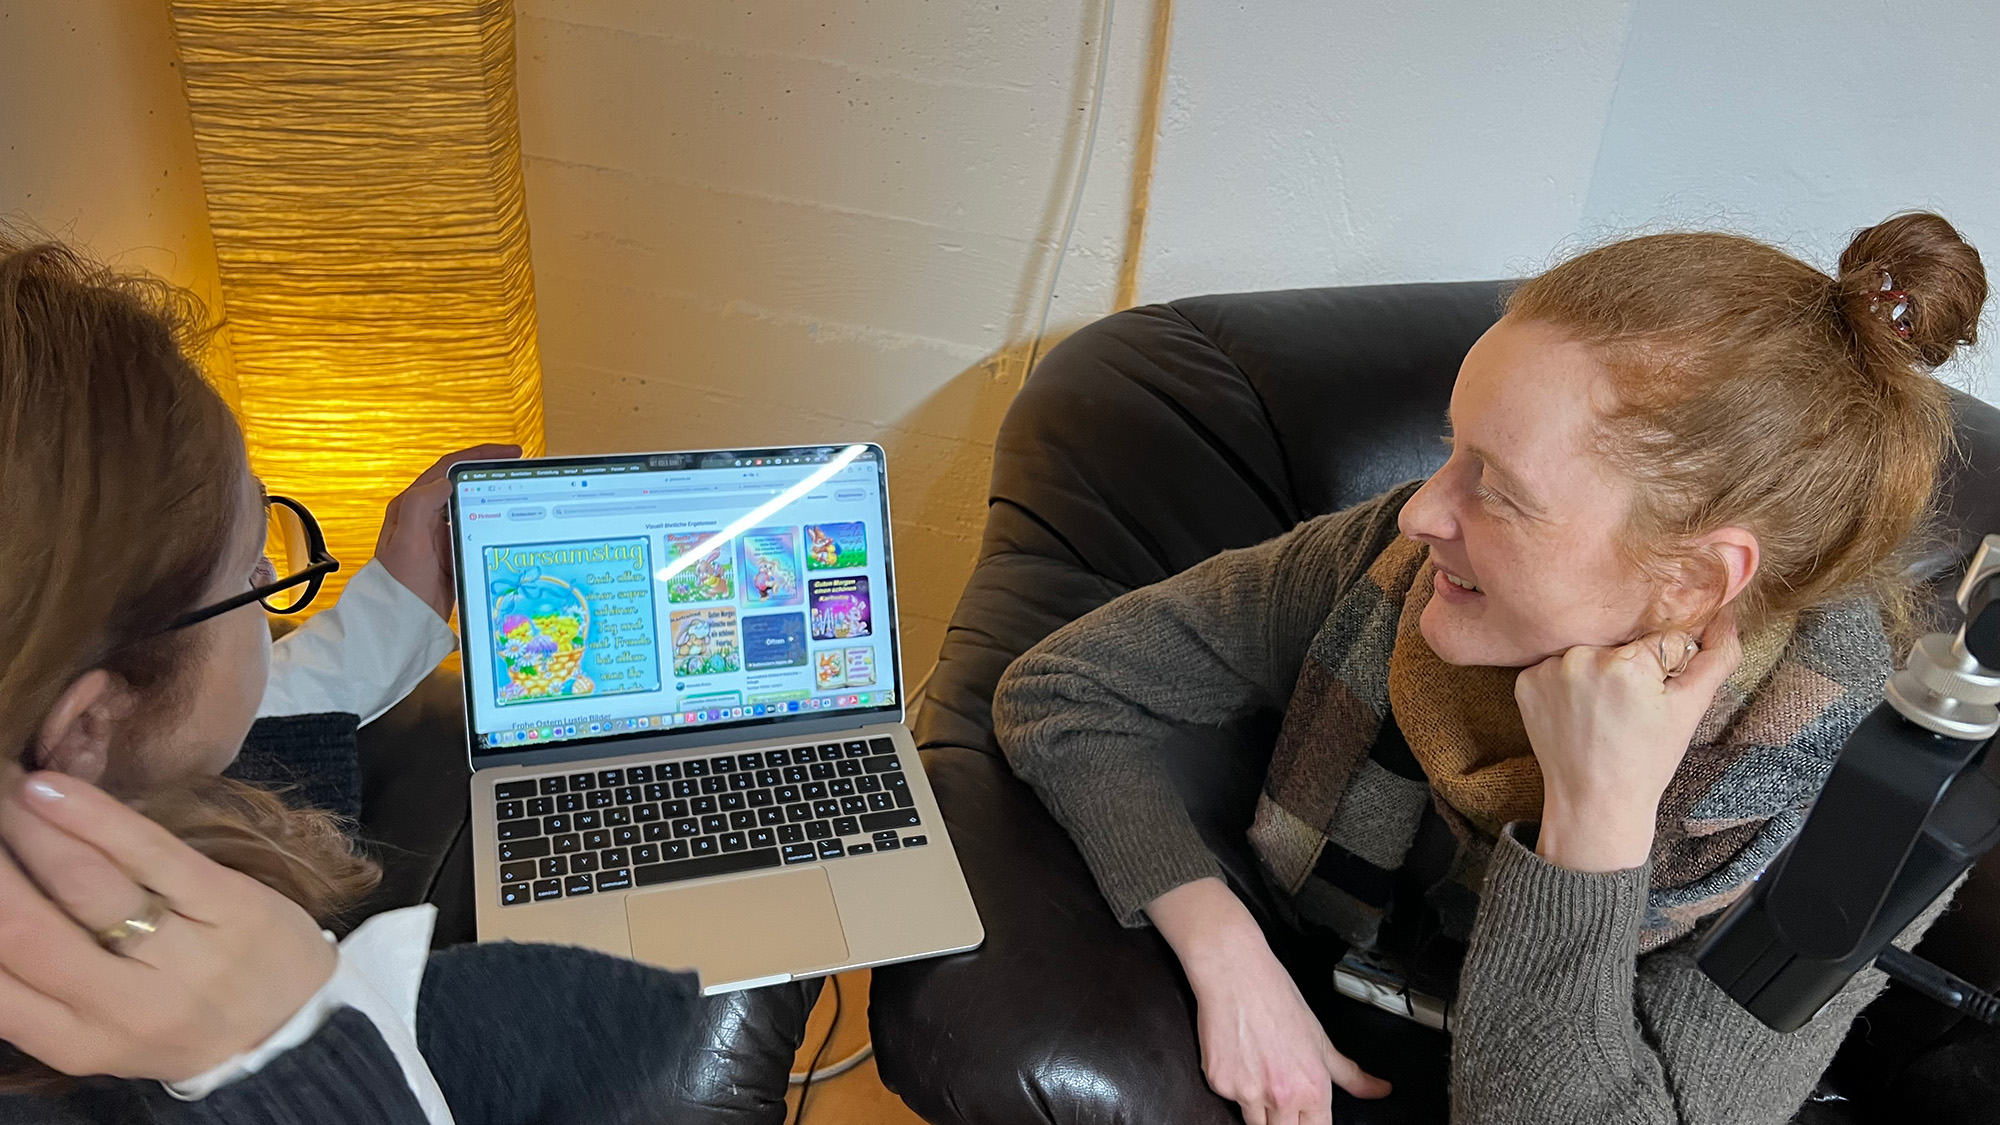 Foto von der Podcast-Aufzeichnung: Zwei Personen schauen auf den Bildschirm eines Laptops, auf dem Bildschrim sieht man Ergebnisse einer Bildersuche, u.a. eine Grusskarte mit gelben Kücken und einer Grussbotschaft